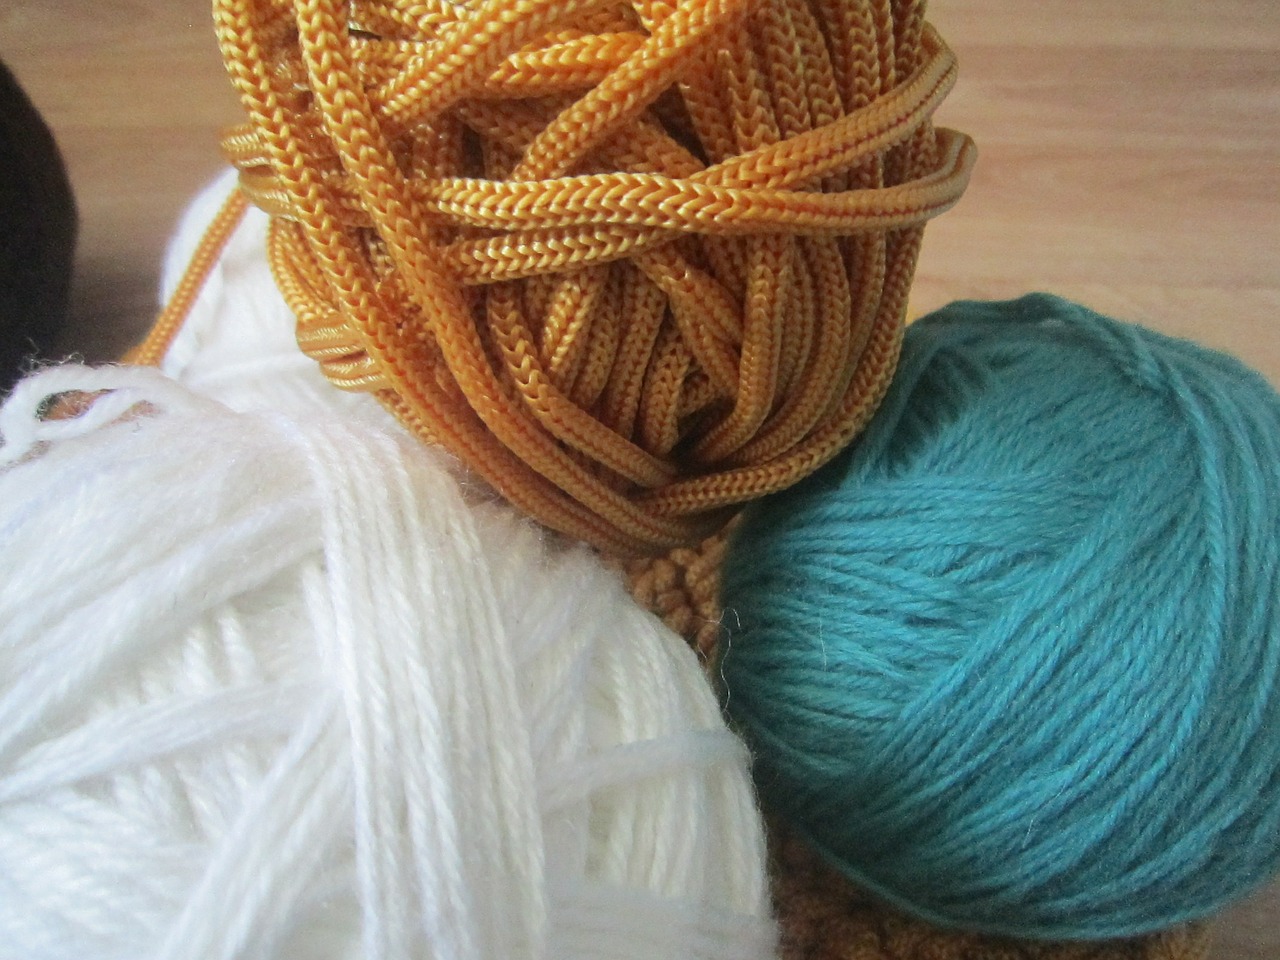 yarn knitting tangle free photo